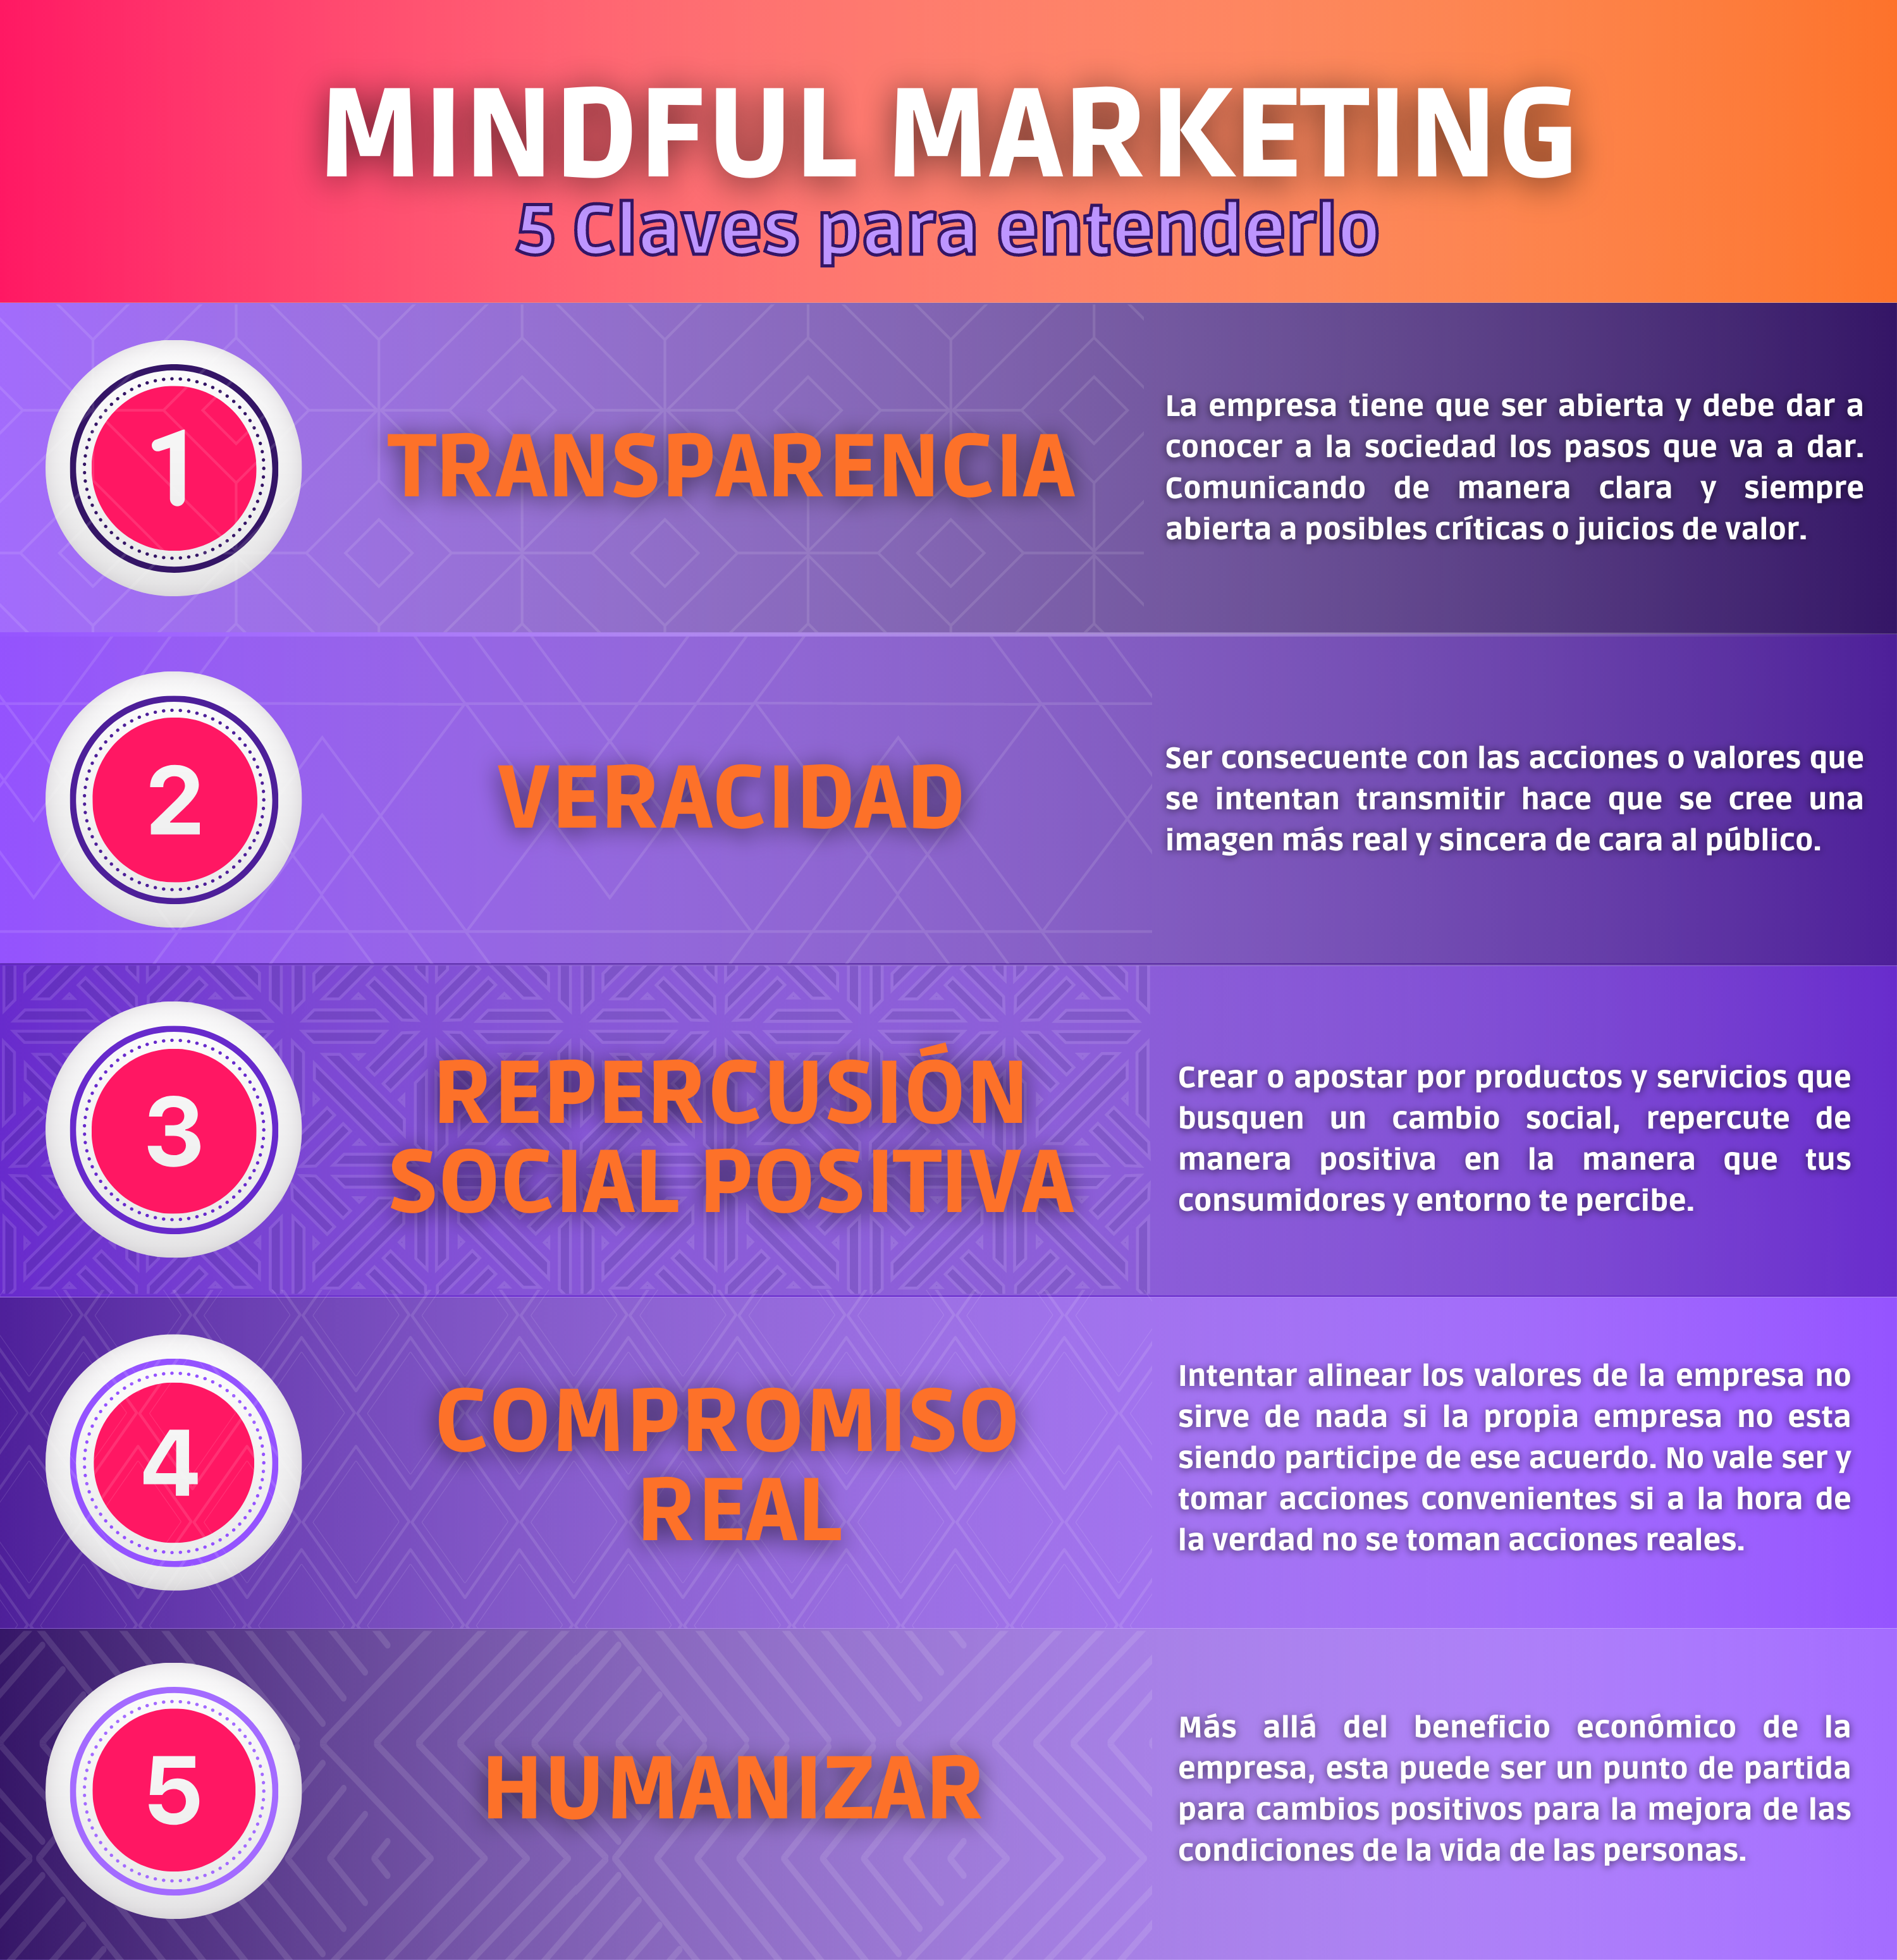 5 claves para entender el mindful marketing